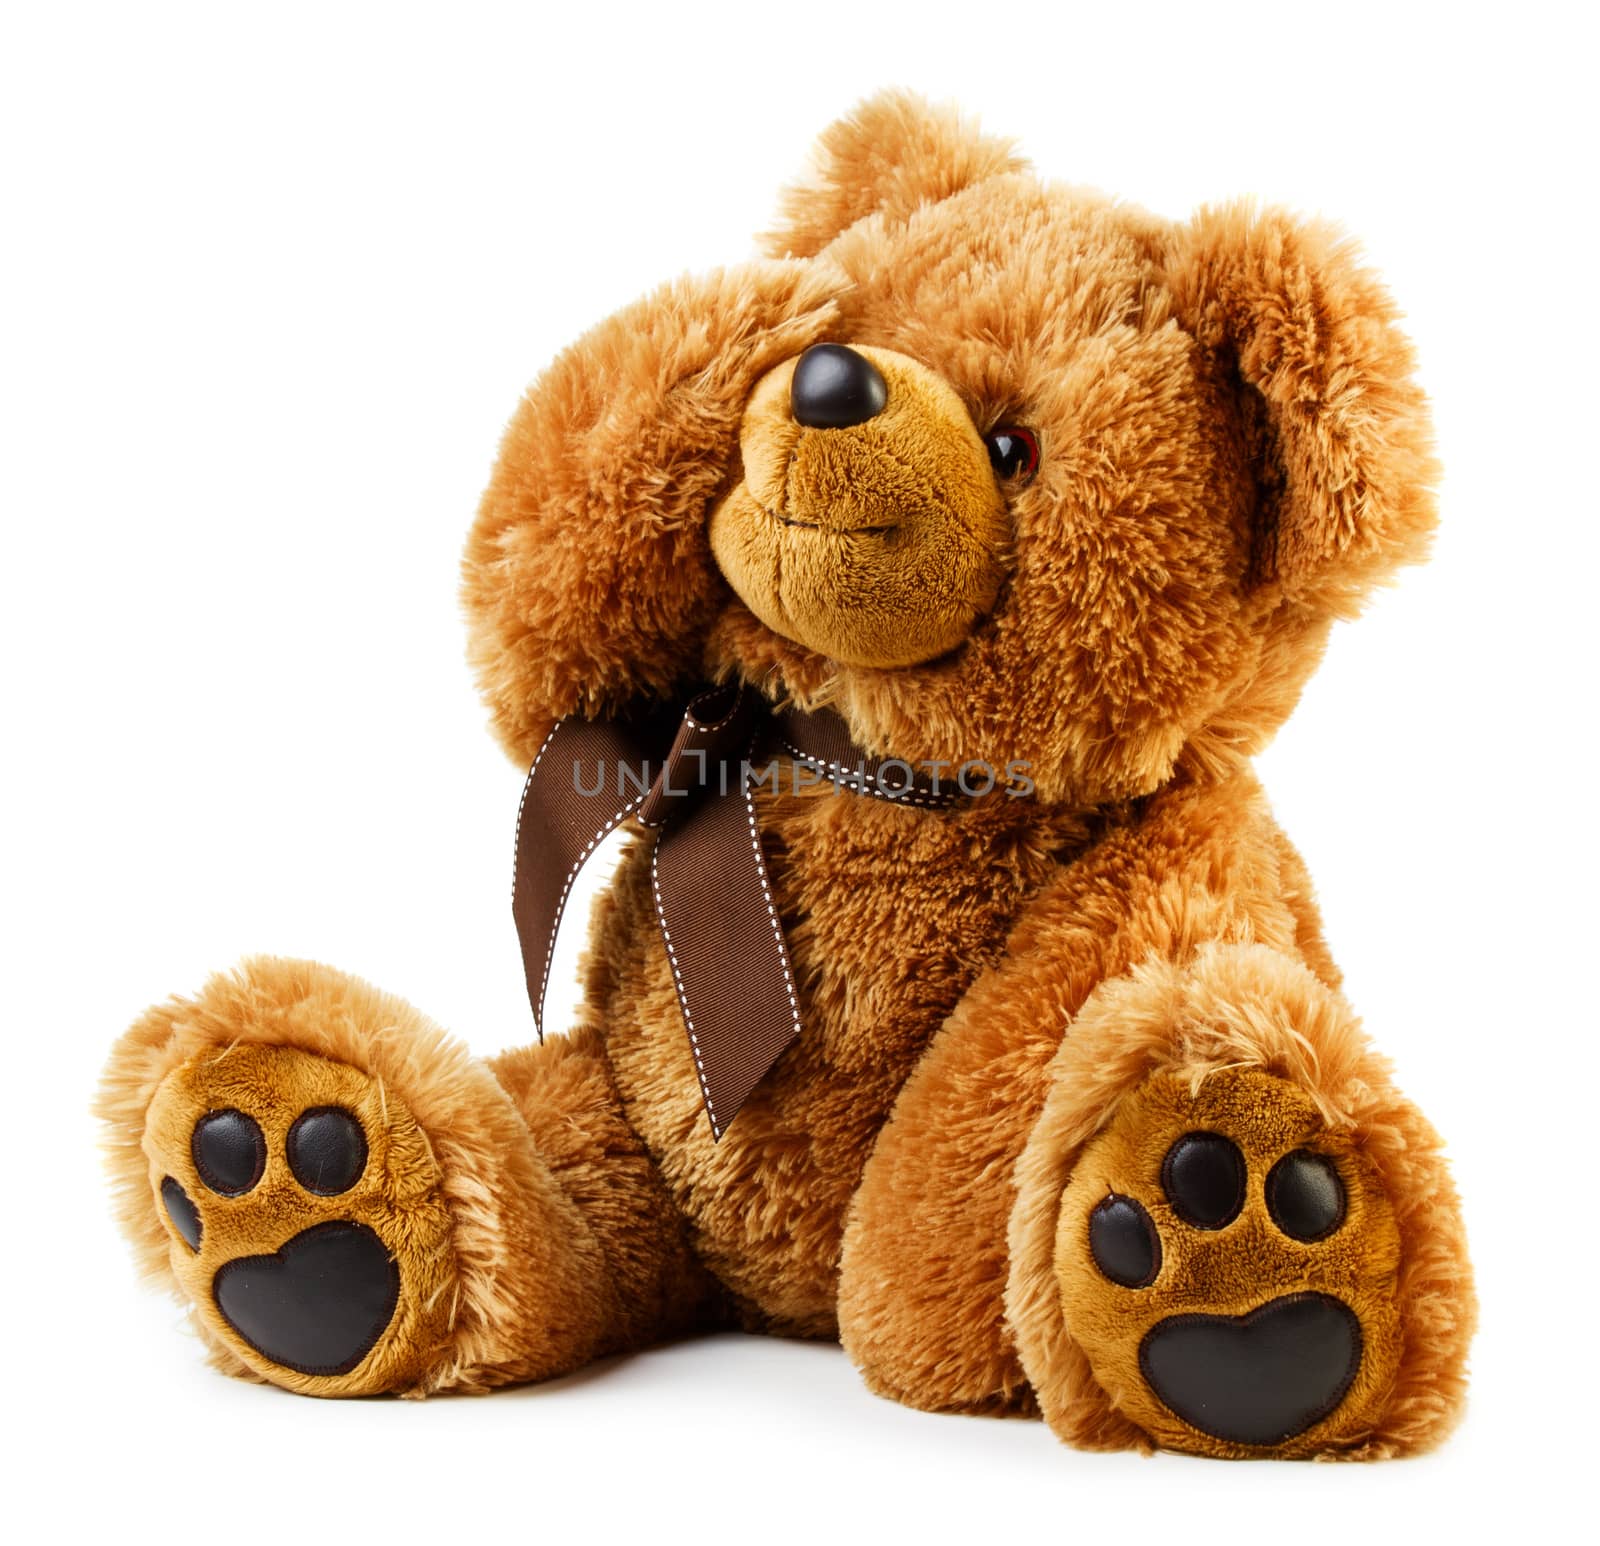 Toy teddy bear by Valengilda